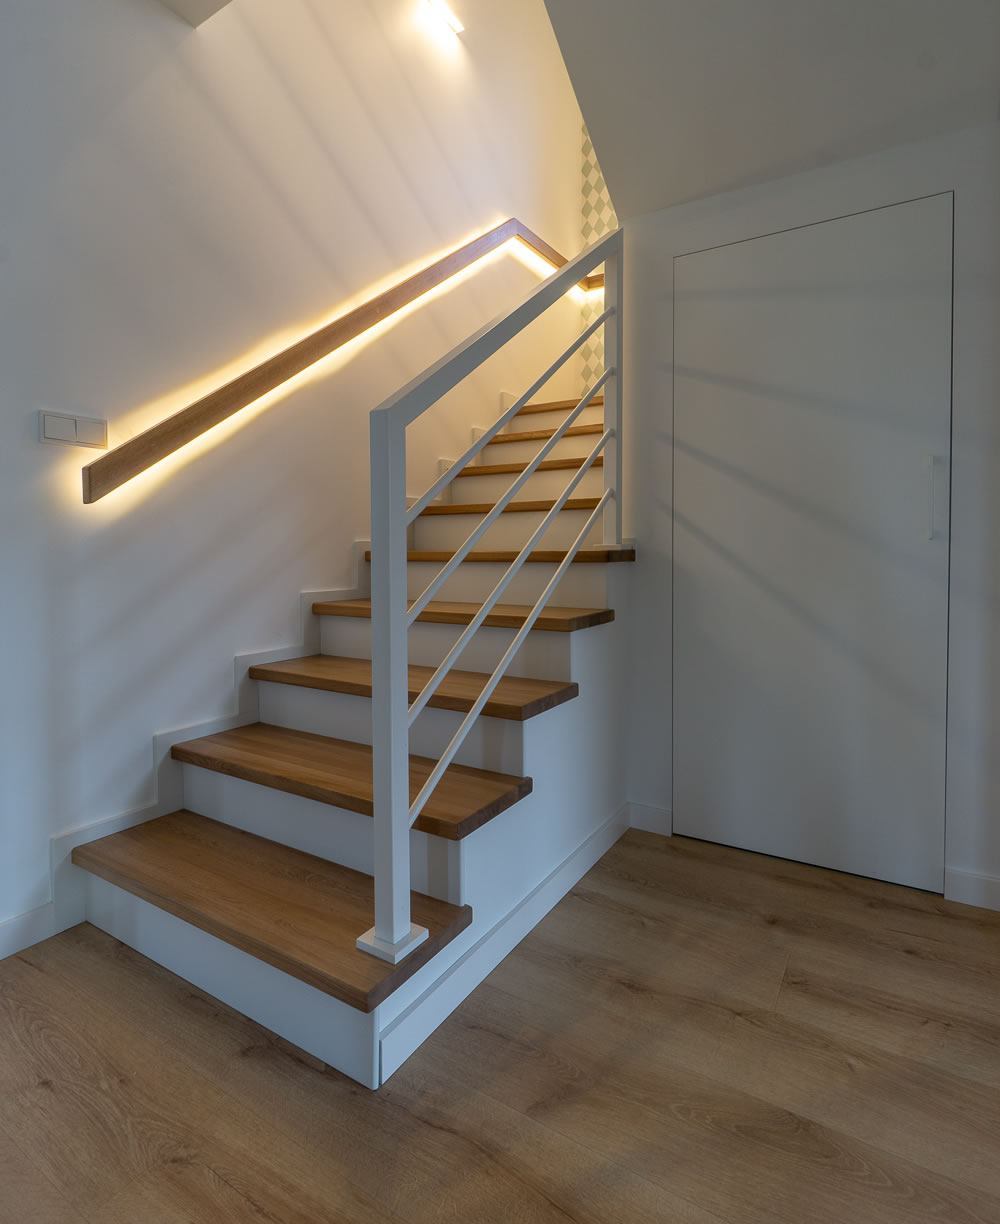 Obłożenie schodów na beton z efektownym podświetleniem LED zamontowanym za pochwytem.